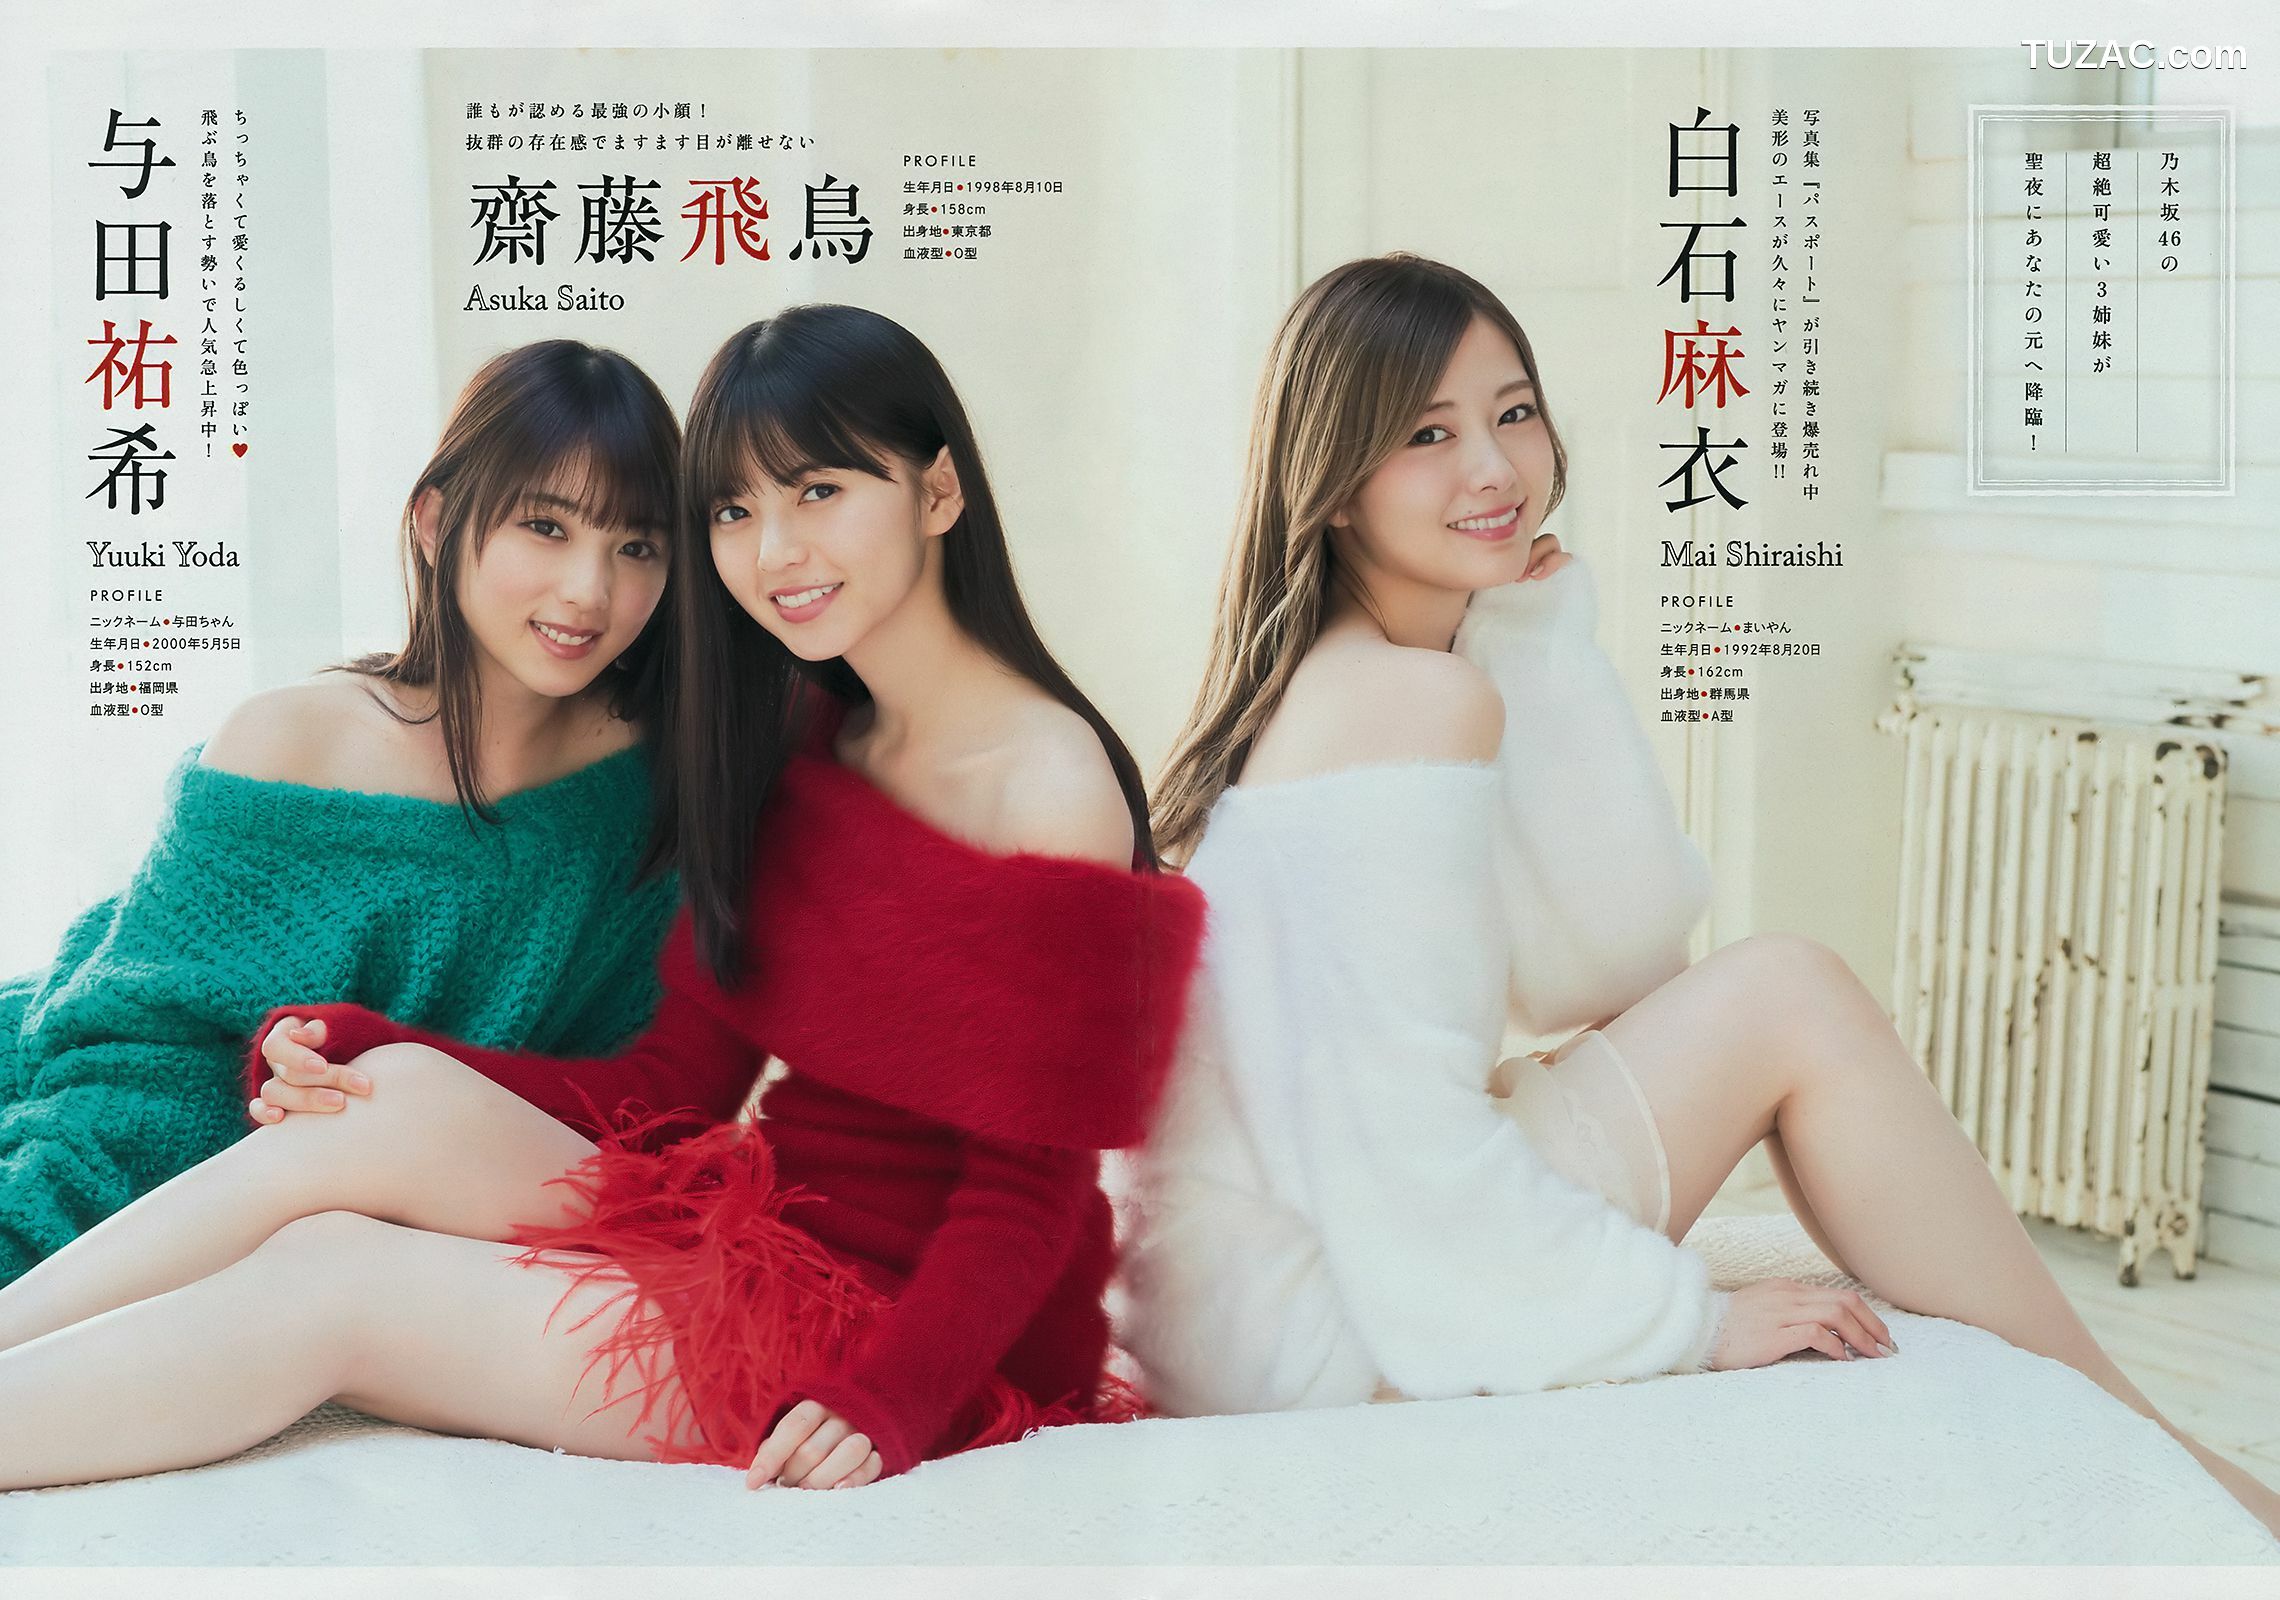 Young Magazine杂志写真_ Nogizaka46 乃木坂46 2019年No.02 写真杂志[16P]